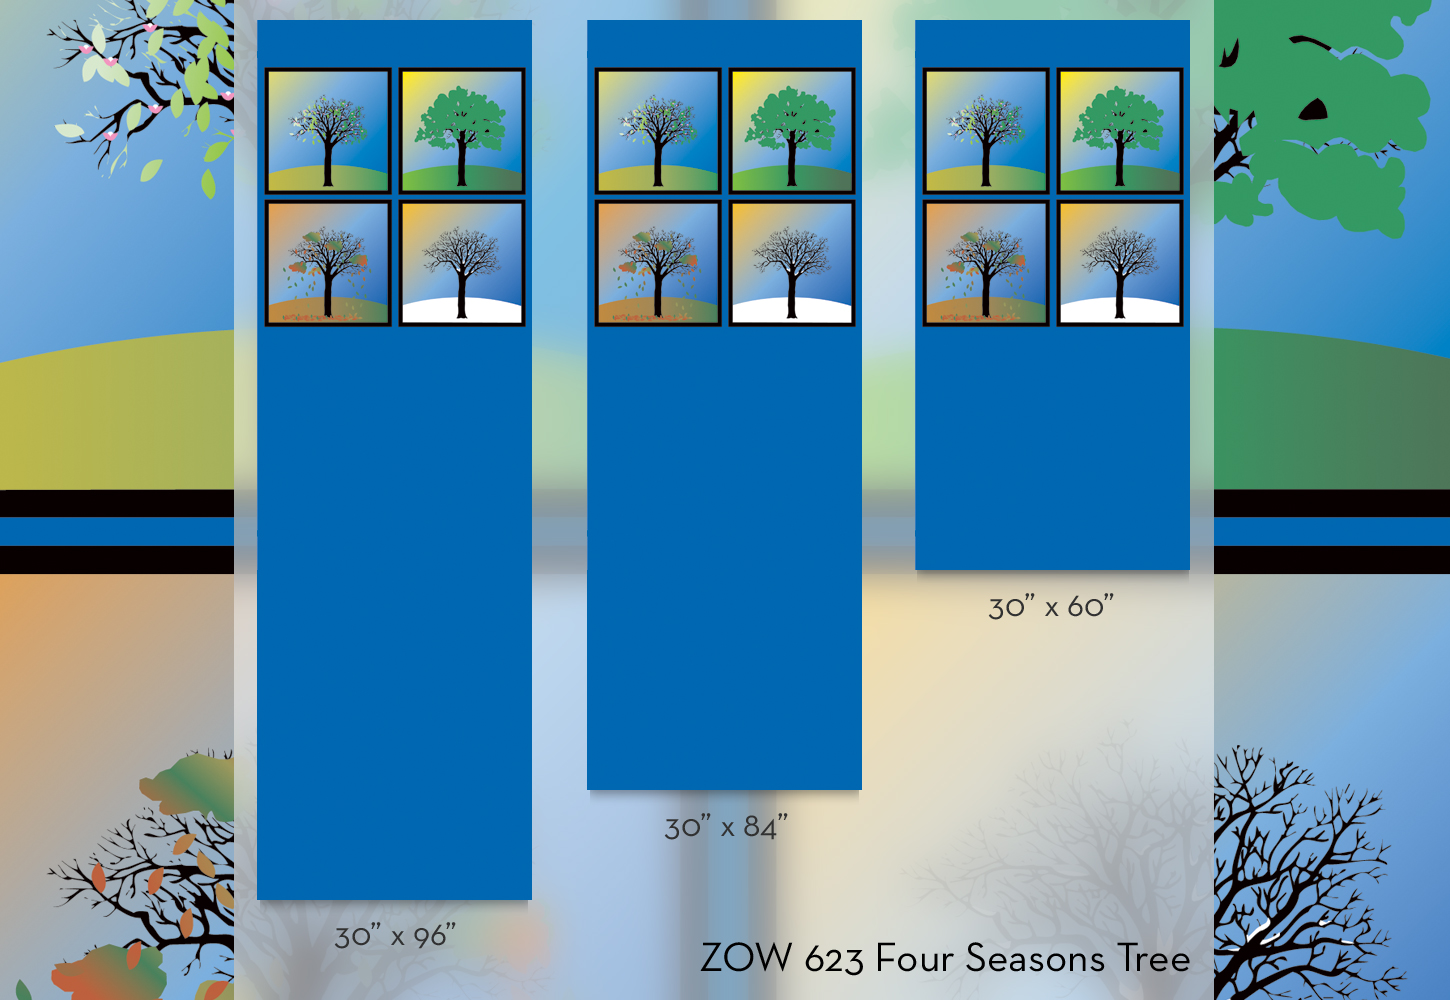 ZOW 623 Four Seasons Tree